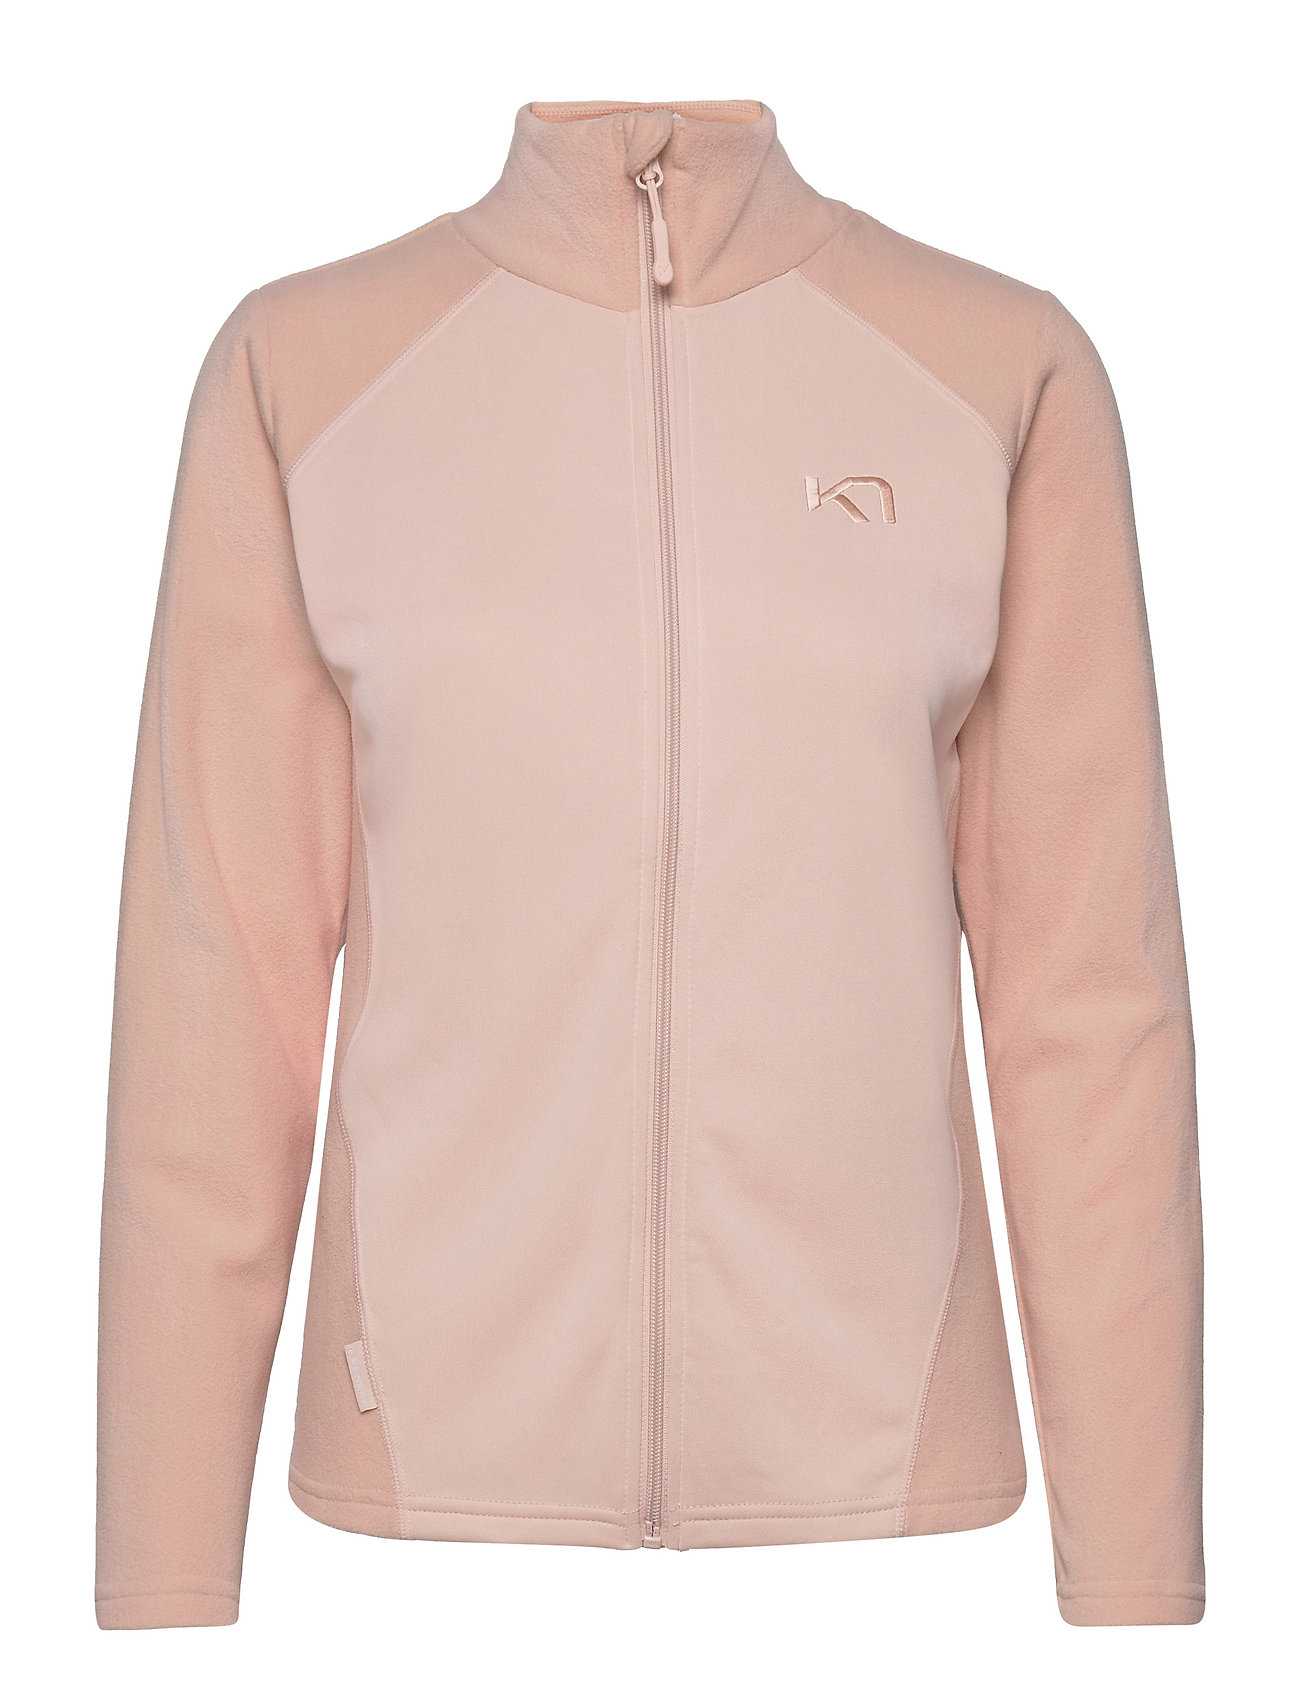 Kari F/Z Fleece Sweat-shirts & Hoodies Fleeces & Midlayers Vaaleanpunainen Kari Traa